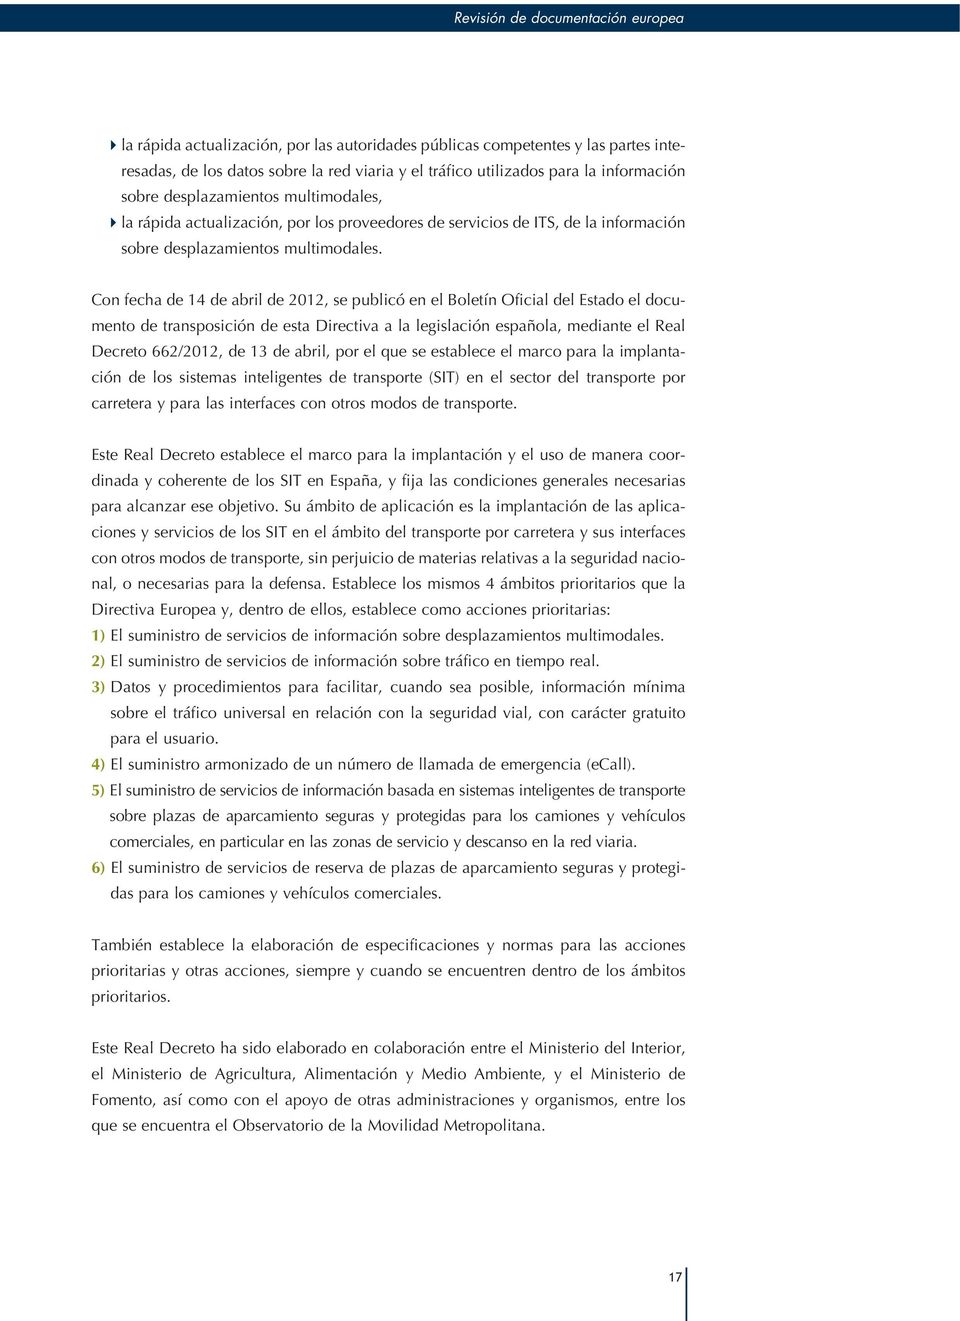 Con fecha de 14 de abril de 2012, se publicó en el Boletín Oficial del Estado el documento de transposición de esta Directiva a la legislación española, mediante el Real Decreto 662/2012, de 13 de